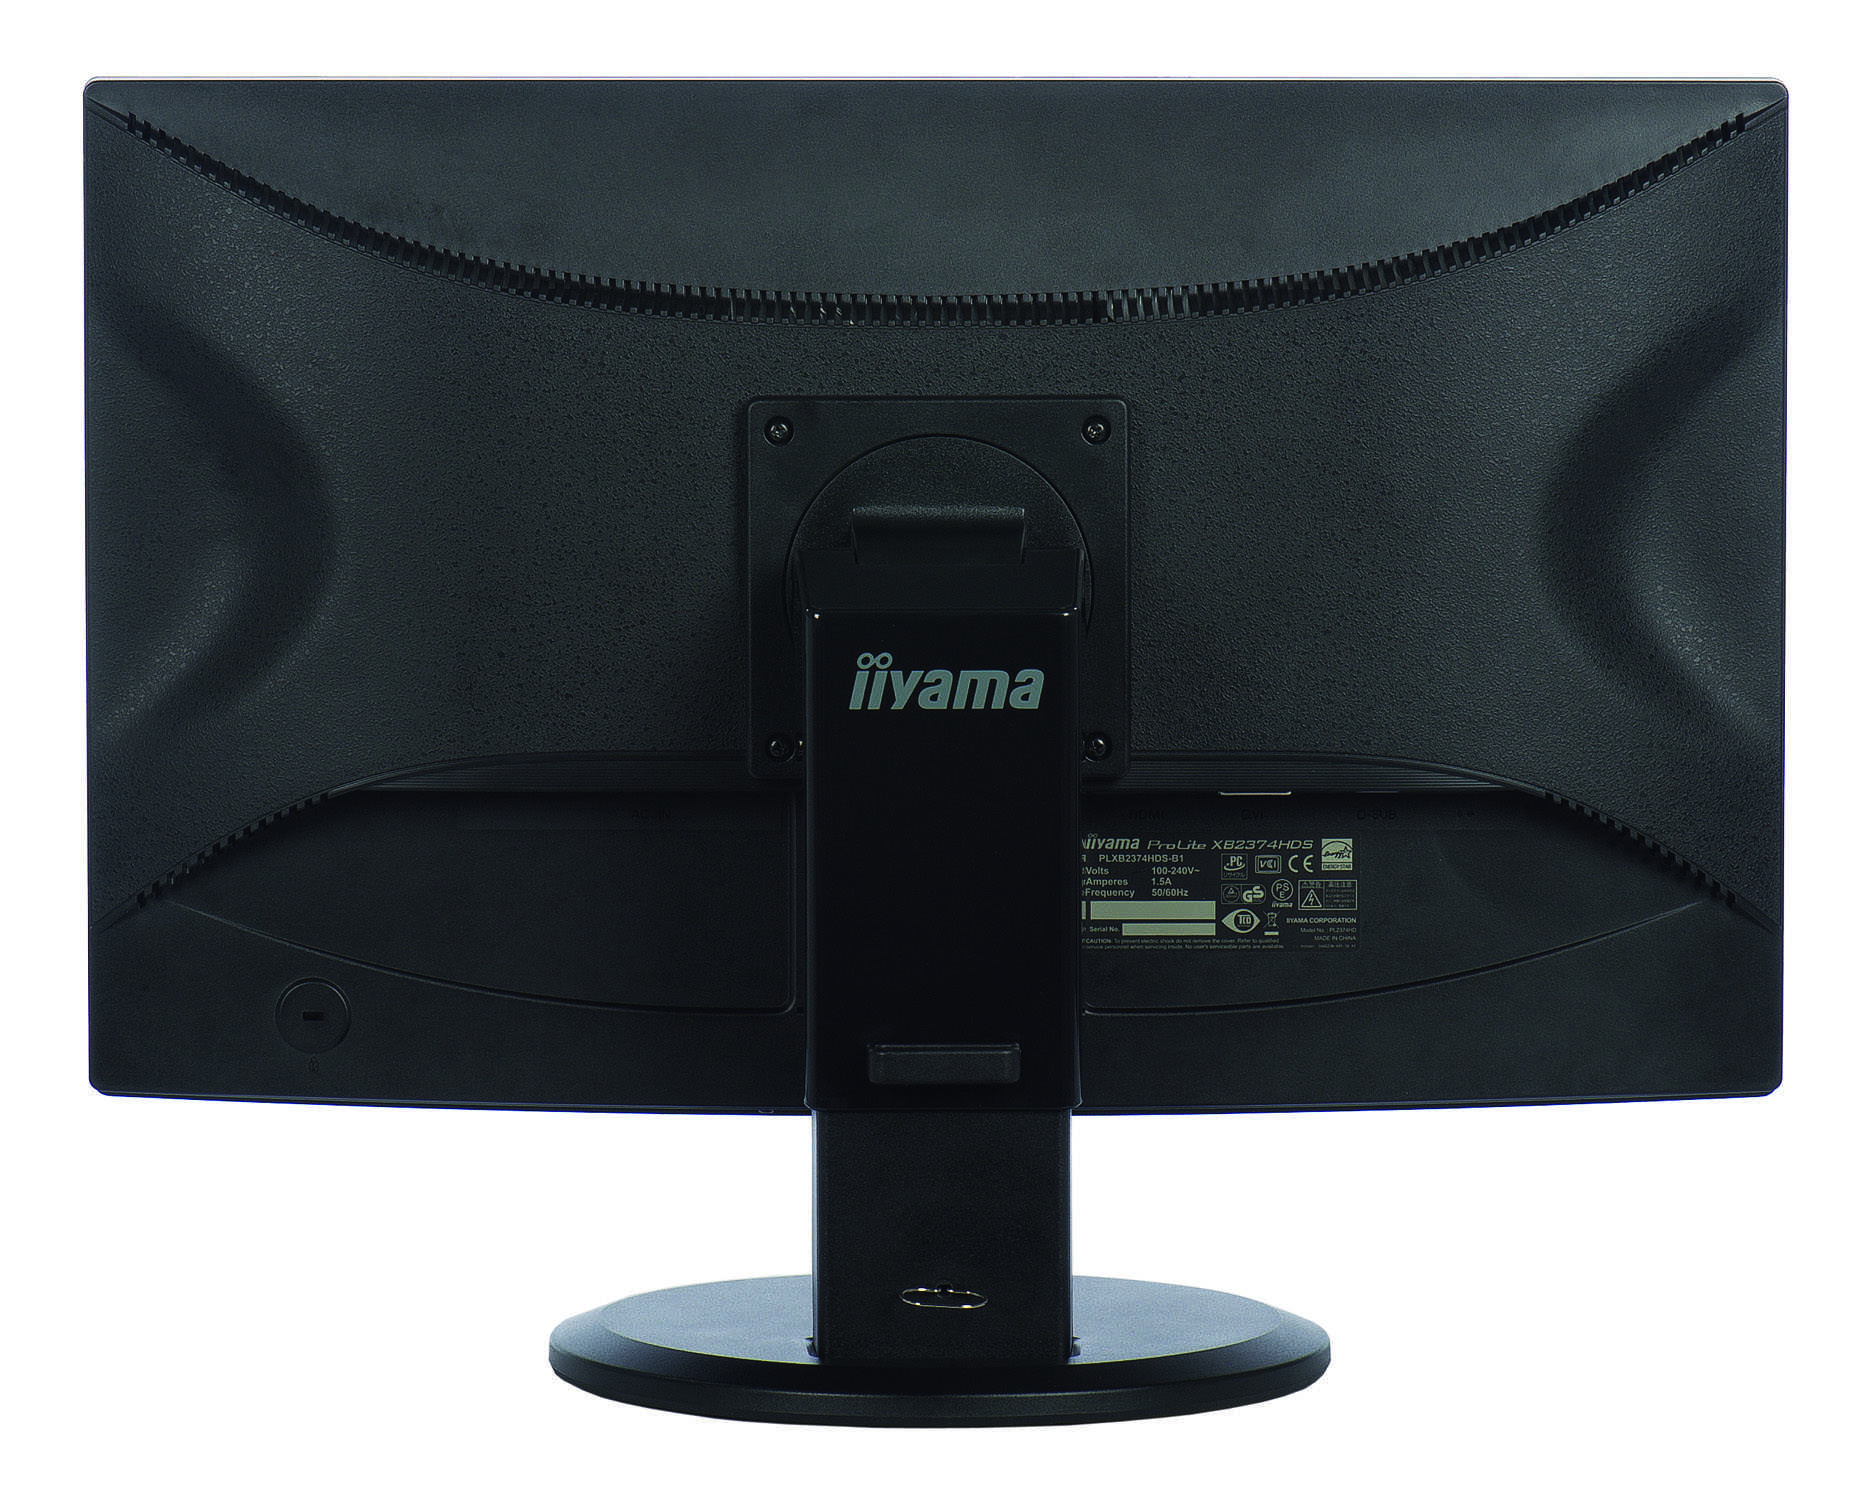 Жк монитор 19.5" iiyama prolite e2083hsd-b1 — купить, цена и характеристики, отзывы